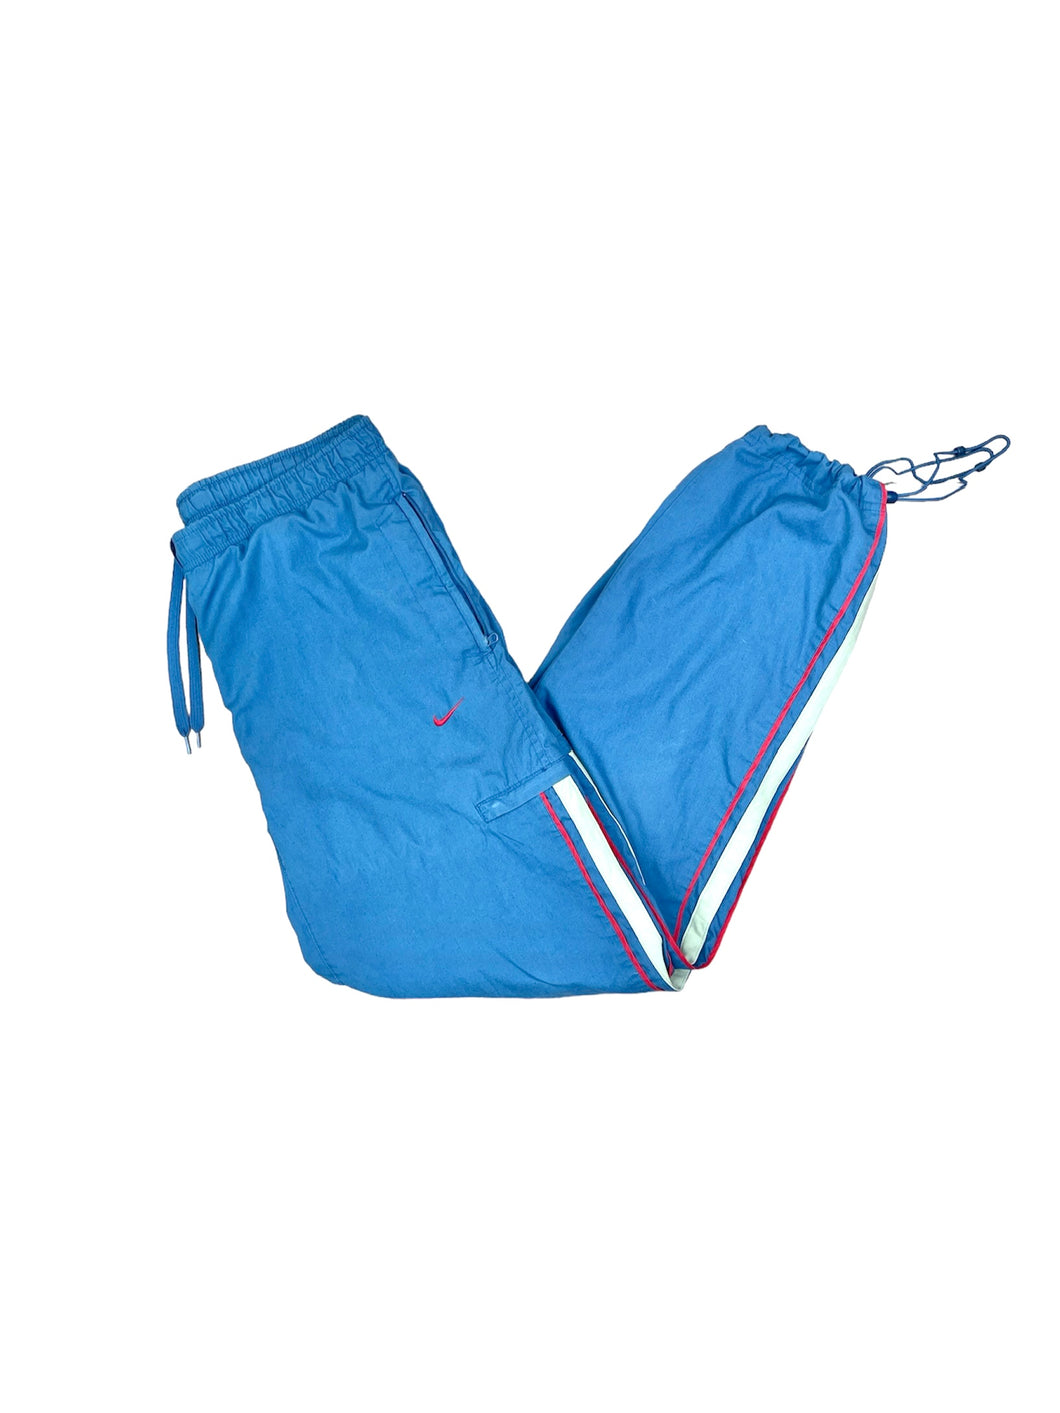 Nike Parachute Track Pant - Large